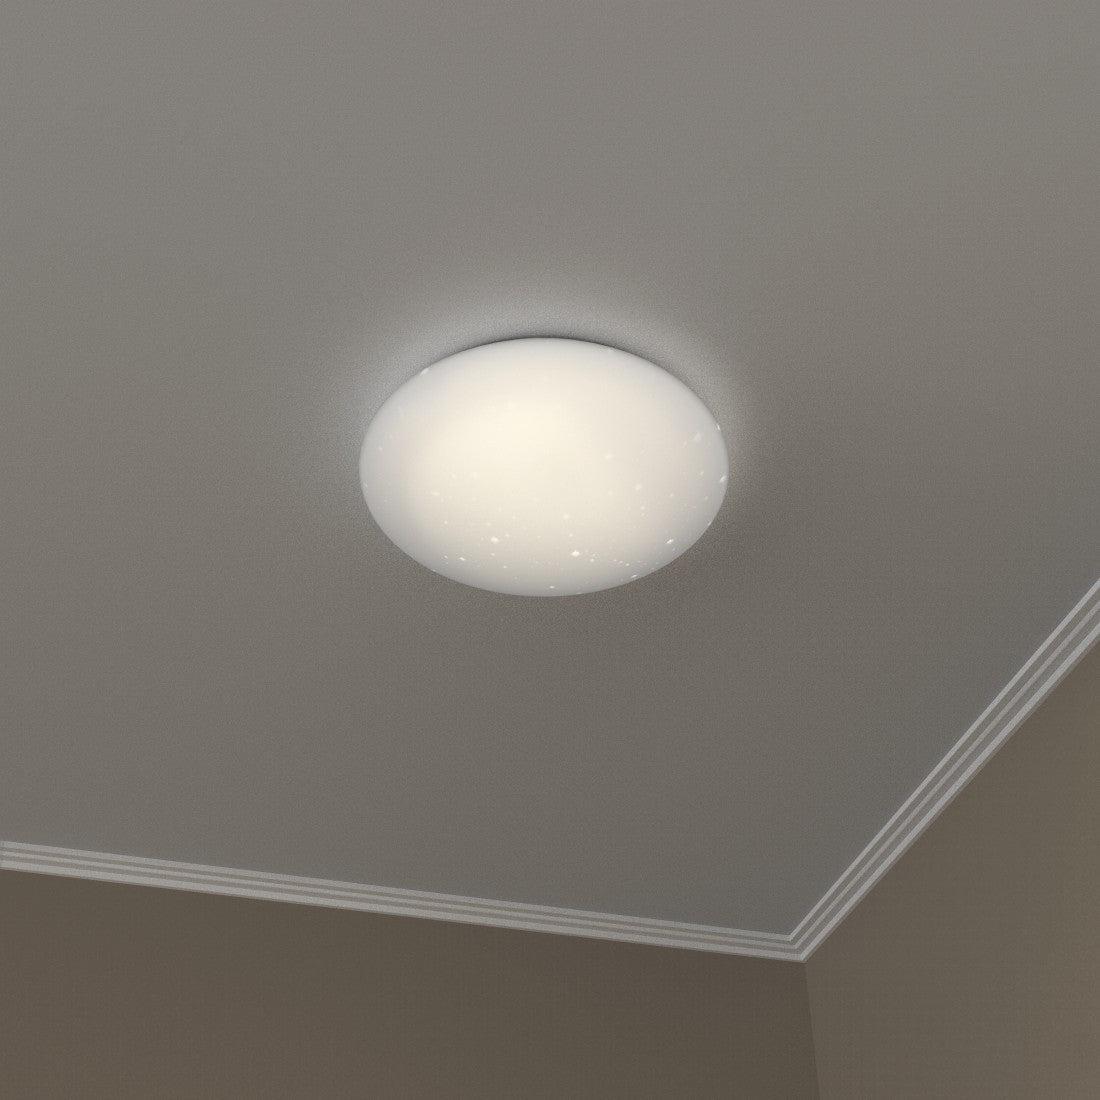 Round ceiling light HAMA WiFi, 30cm, 1500 Im, 10W